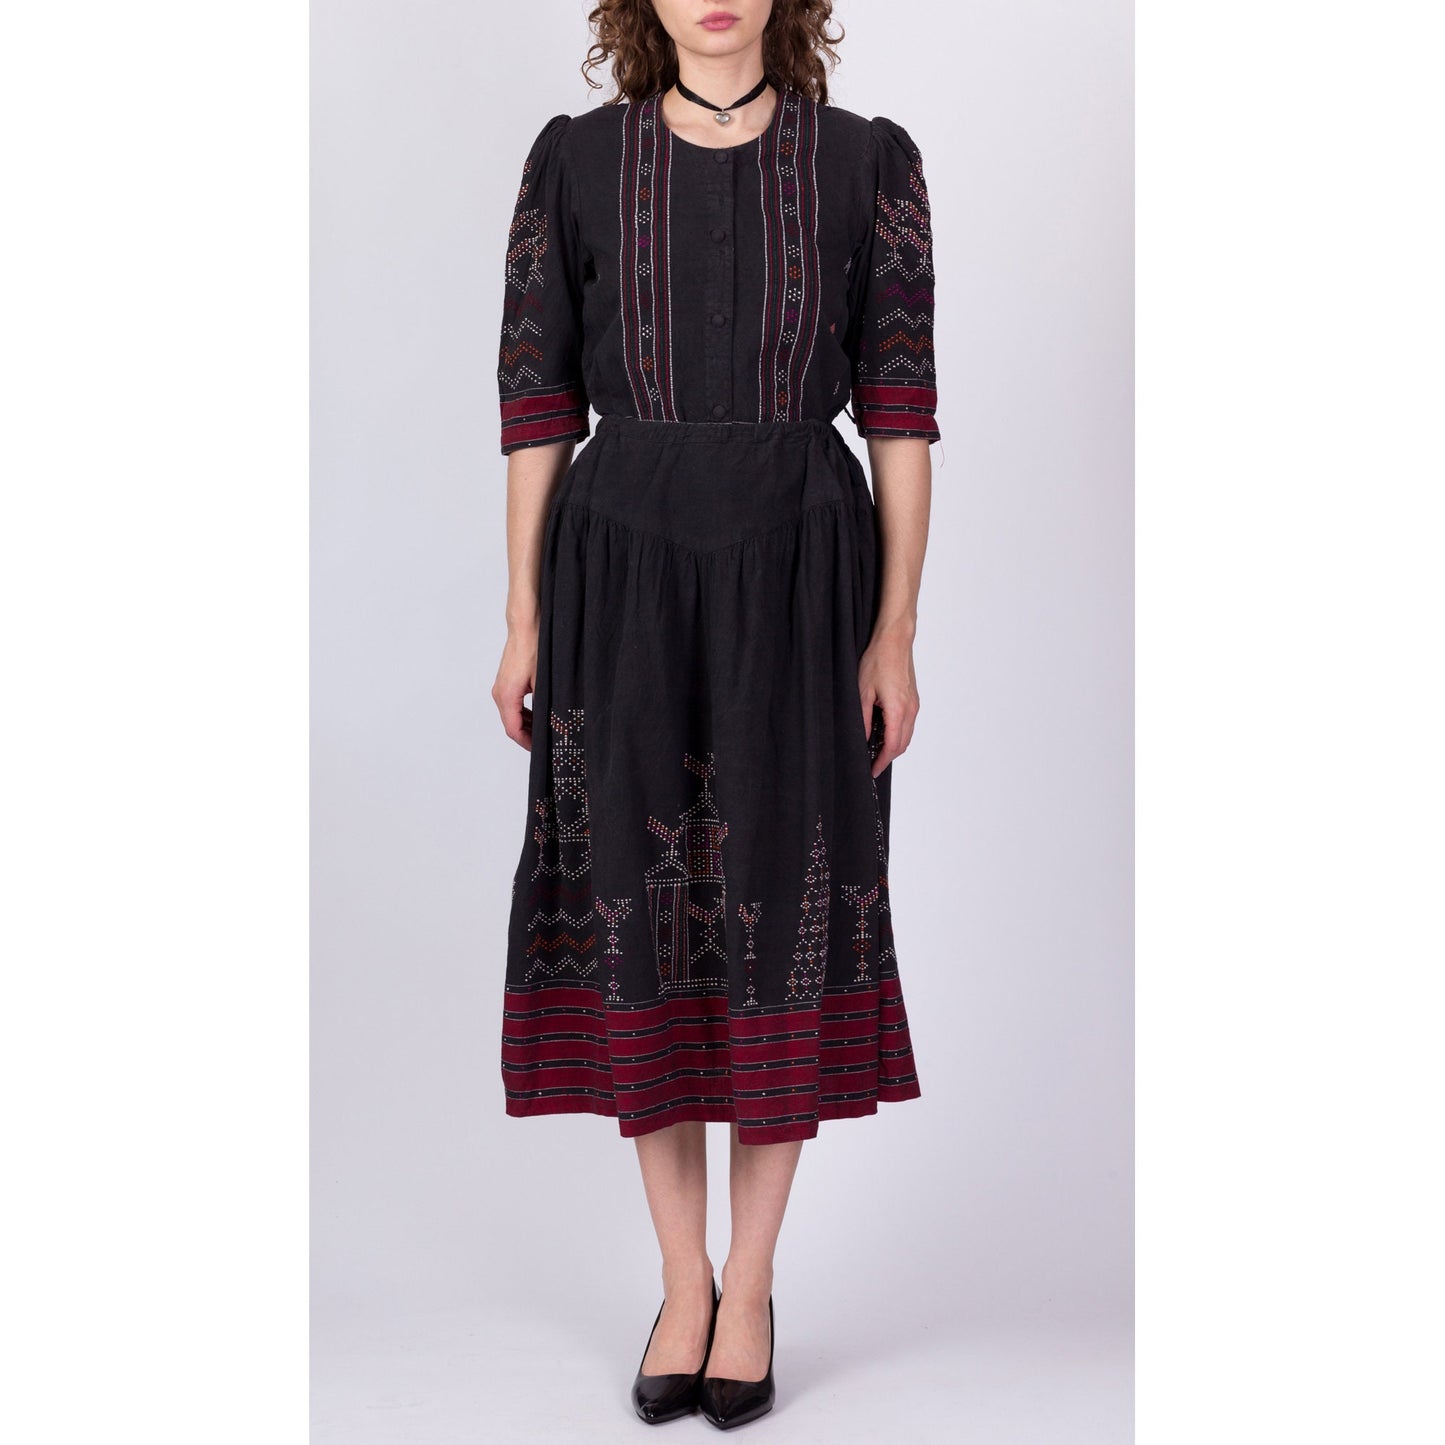 Vintage Eastern European Embroidered Folk Skirt Set - Small to Medium 